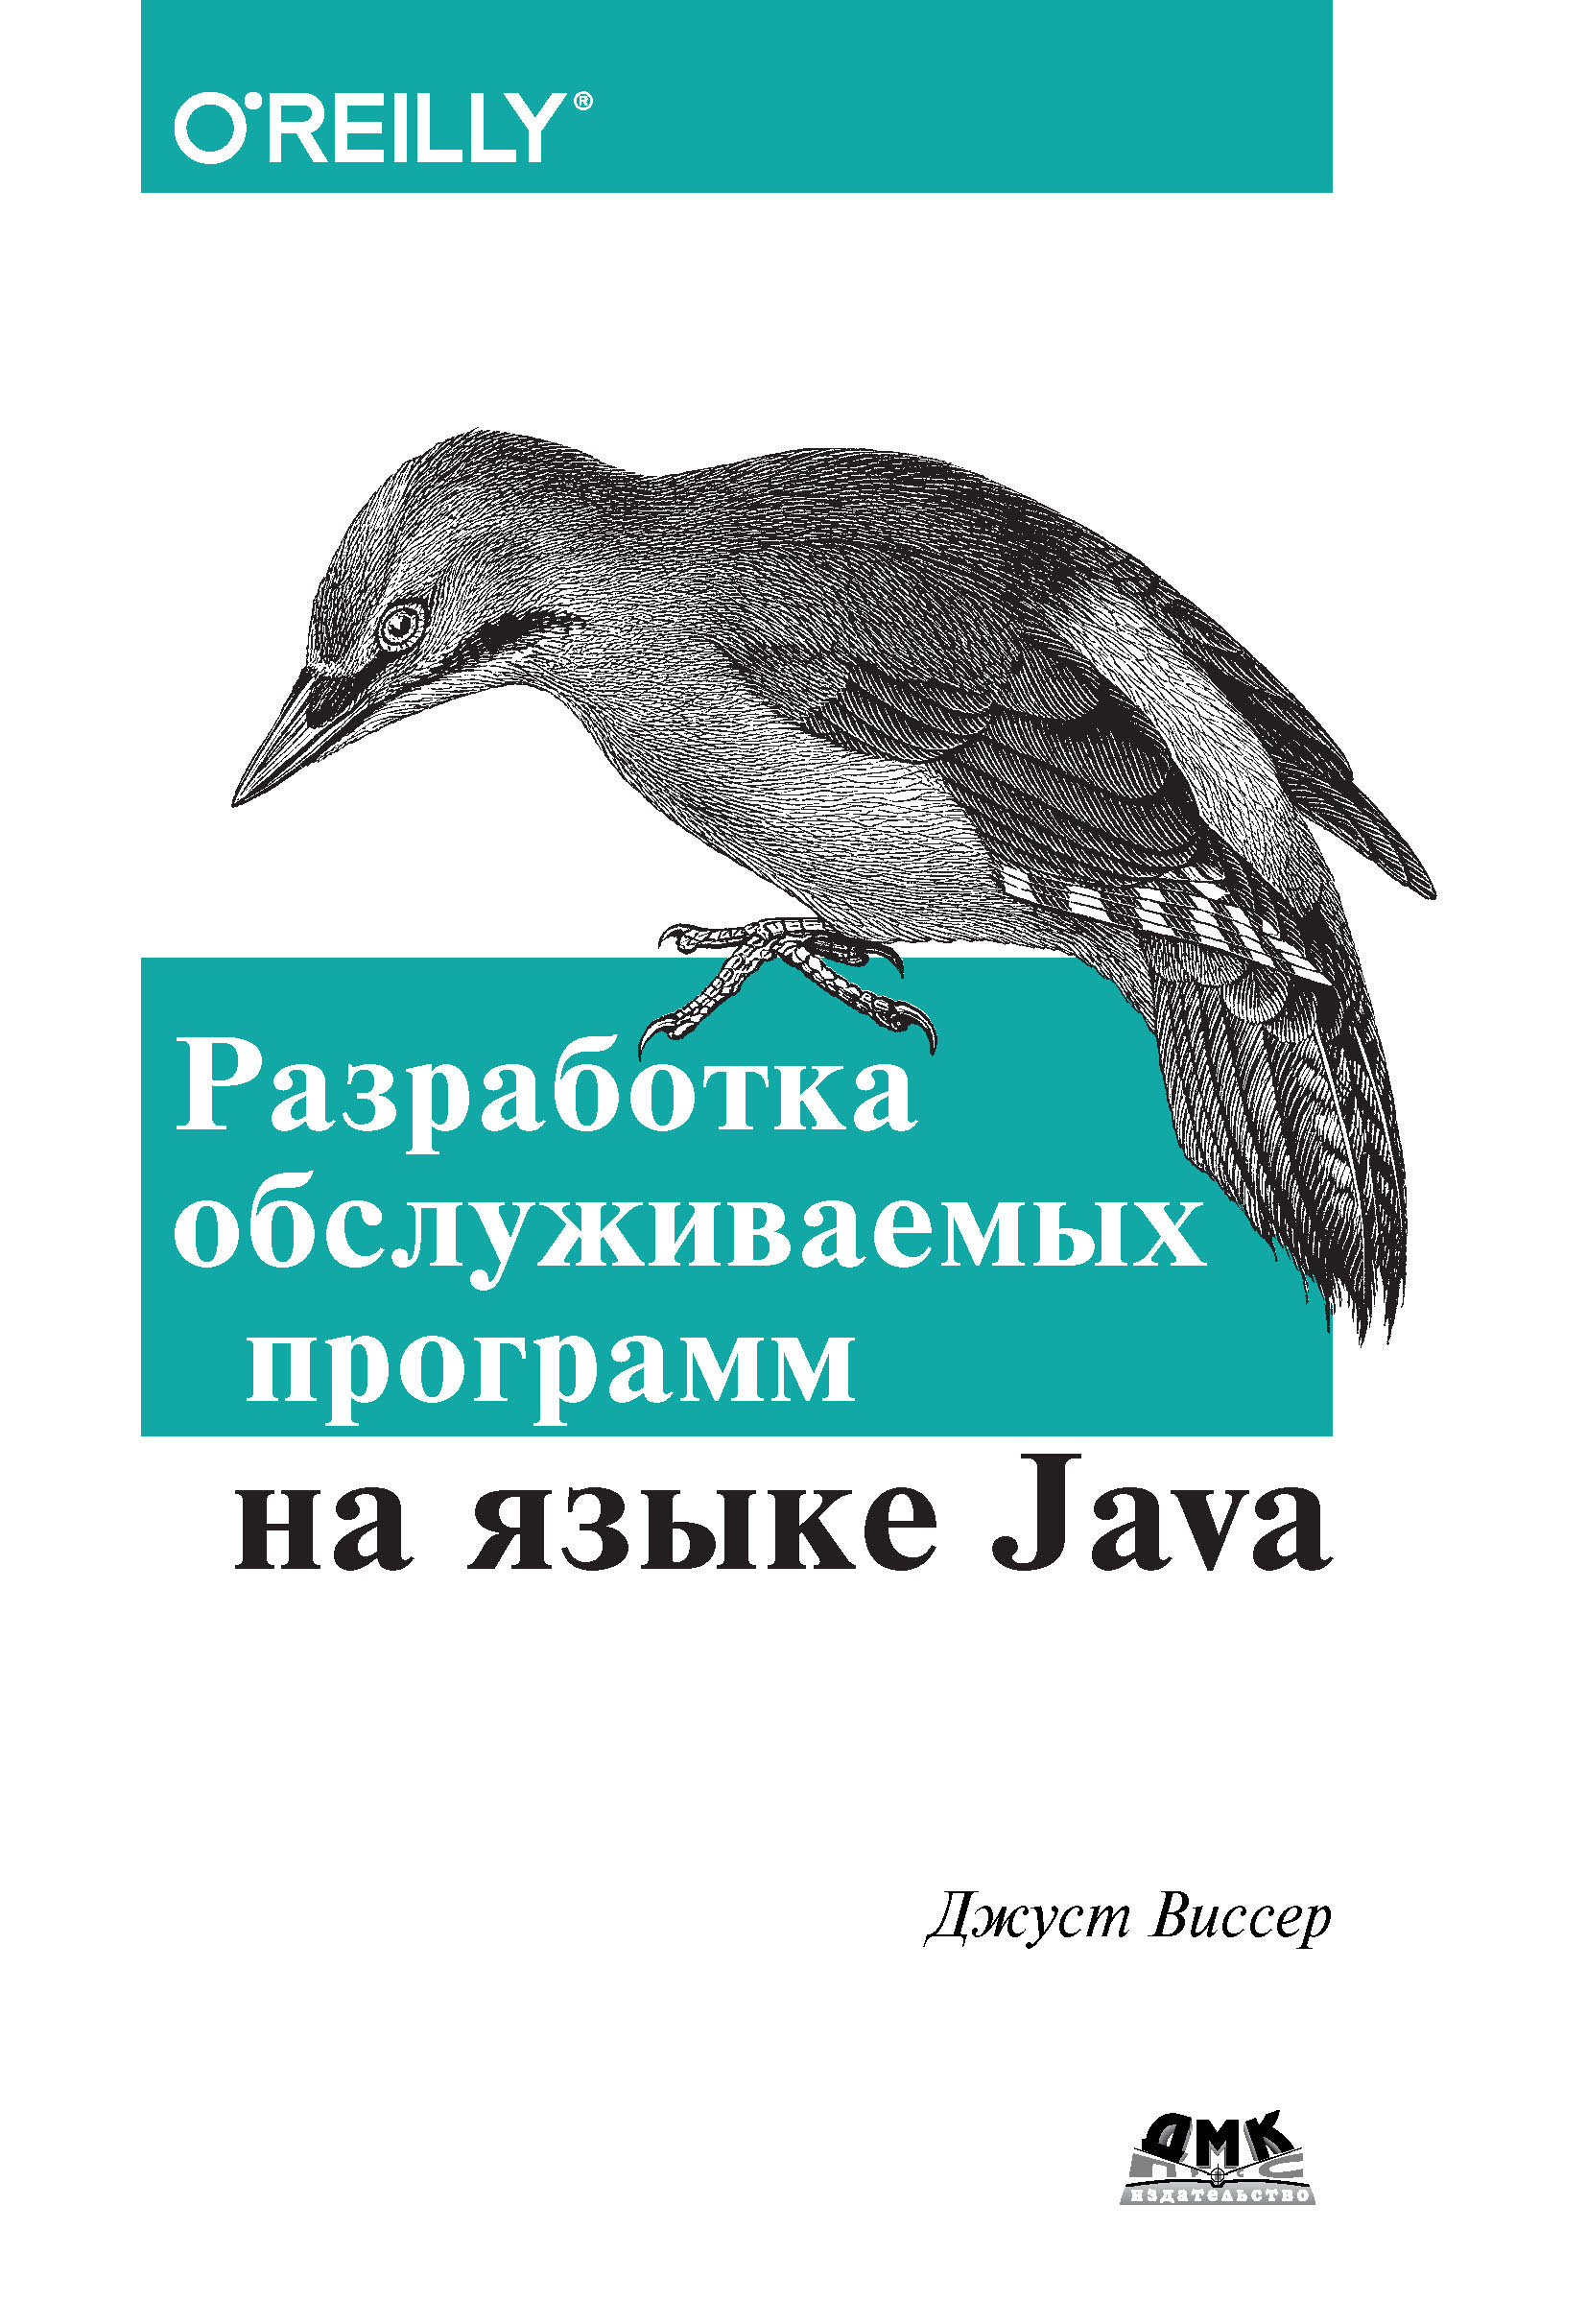 Книга  Разработка обслуживаемых программ на языке Java созданная Джуст Виссер, Р. Н. Рагимов может относится к жанру зарубежная компьютерная литература, зарубежная справочная литература, программирование, руководства. Стоимость электронной книги Разработка обслуживаемых программ на языке Java с идентификатором 22873674 составляет 359.00 руб.